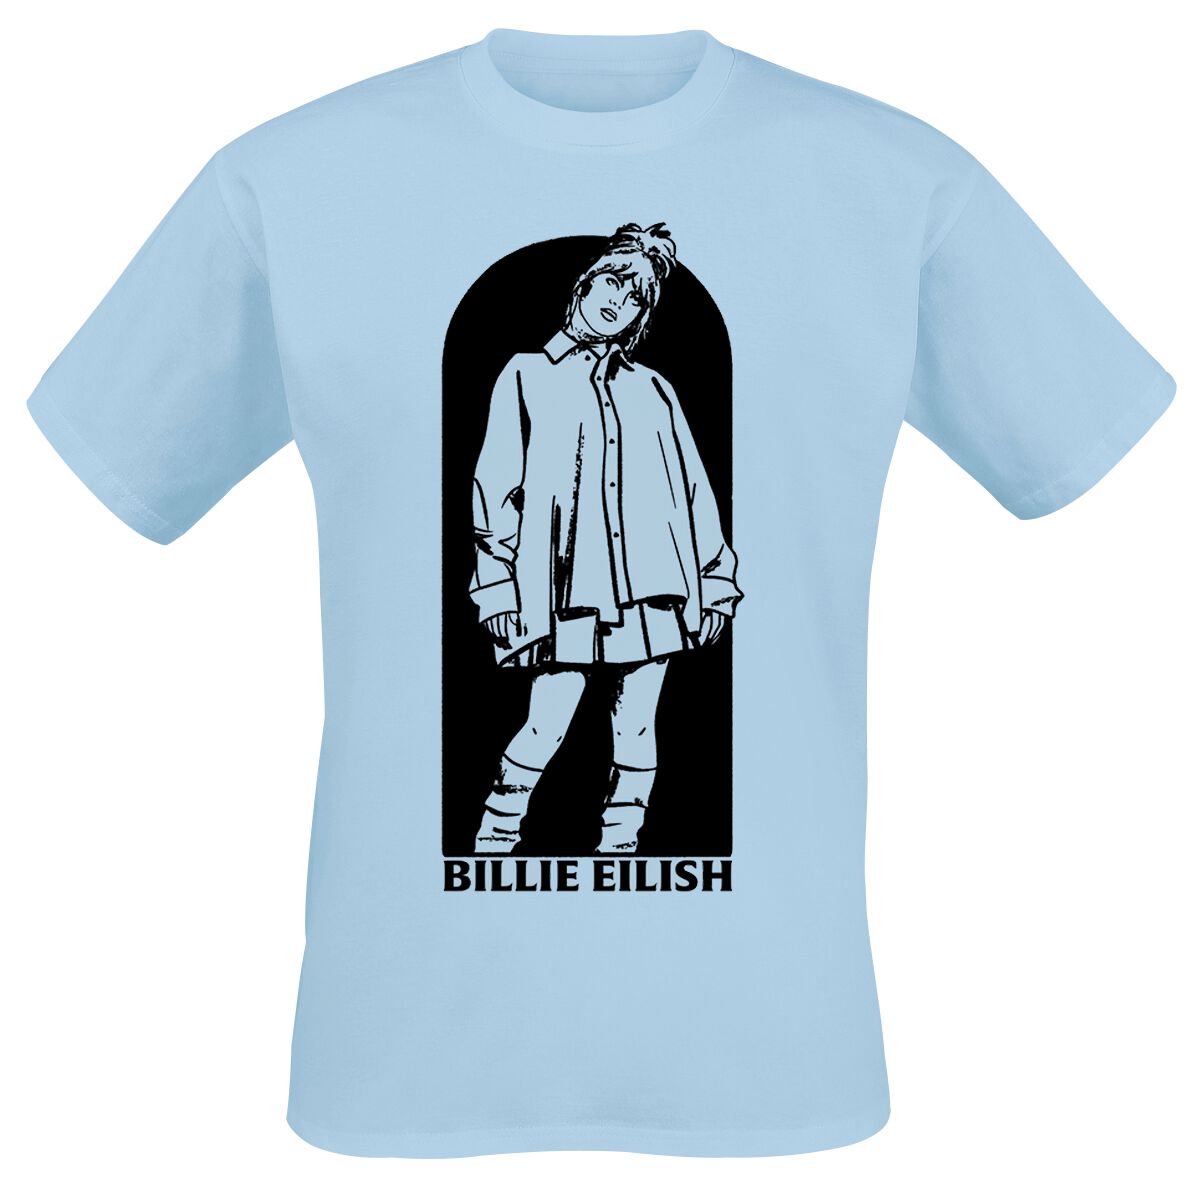 Billie Eilish T-Shirt - Doorway - S bis XL - für Männer - Größe L - hellblau  - Lizenziertes Merchandise!